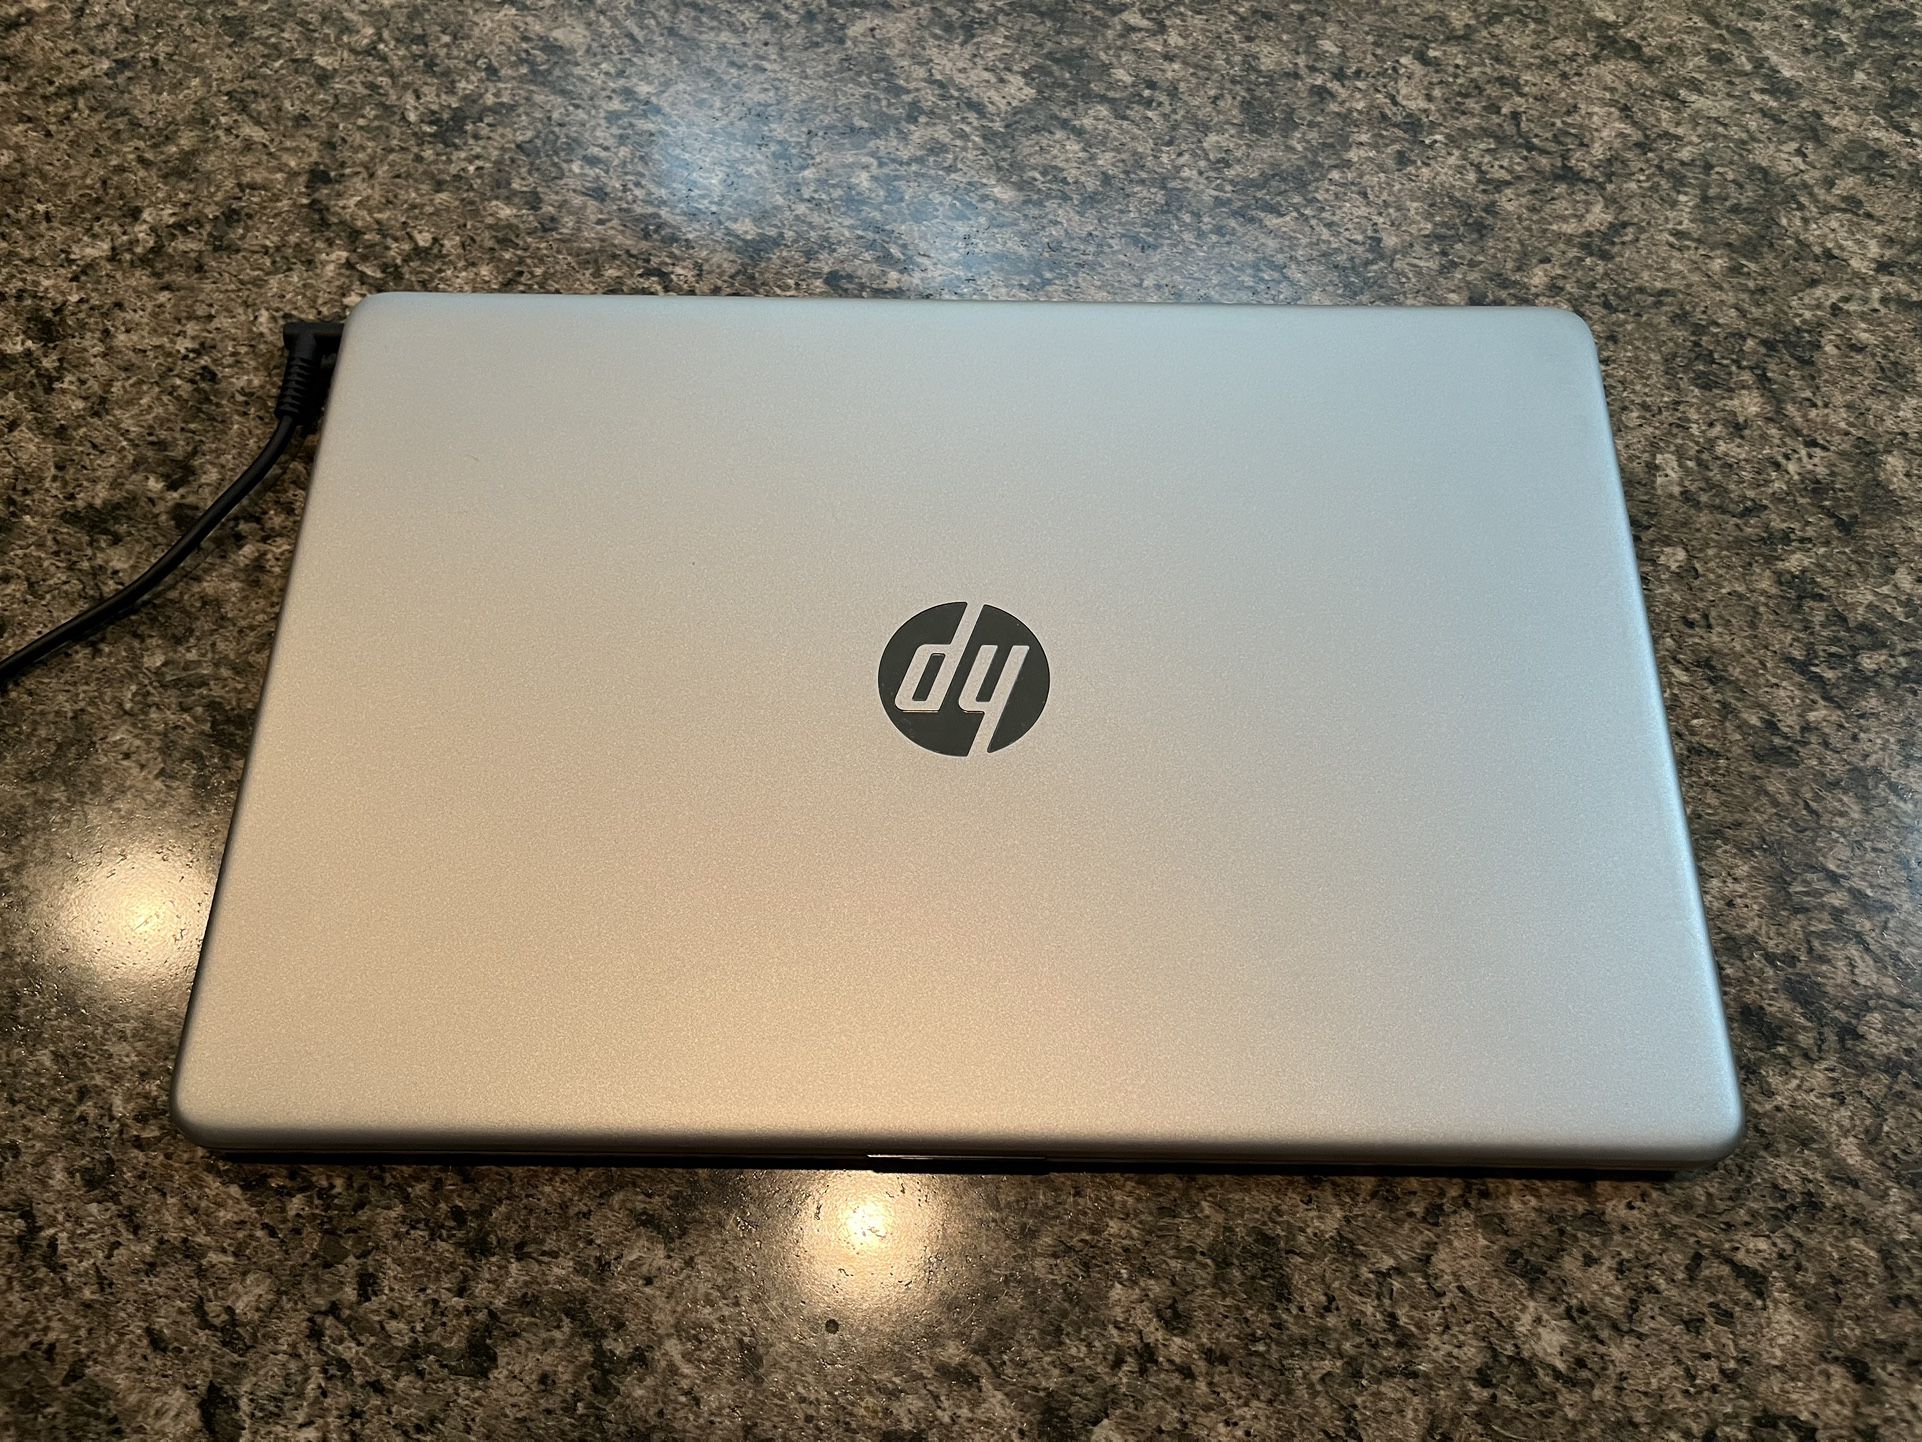 HP 15.6” Touchscreen Laptop